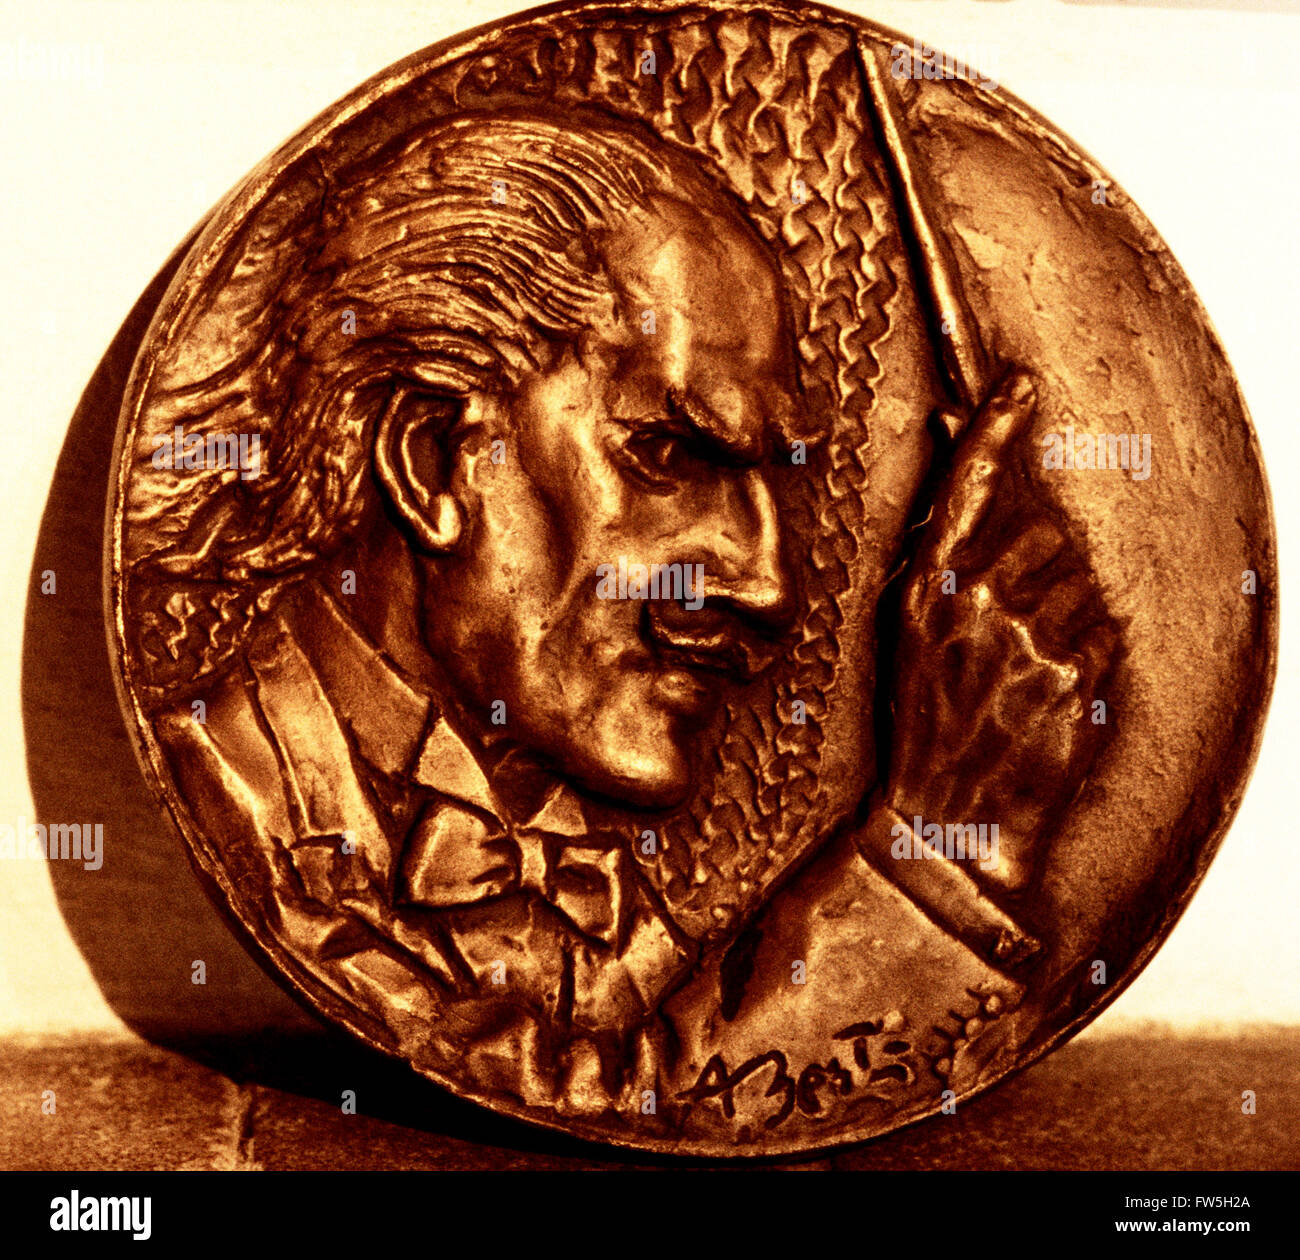 Bronze Medaille von Arturo Toscanini, italienischer Dirigent, im Haus von Geburt, geboren 25.03.1867 um 13 Uhr, Via Rodolfo Tanzi, Parma Stockfoto